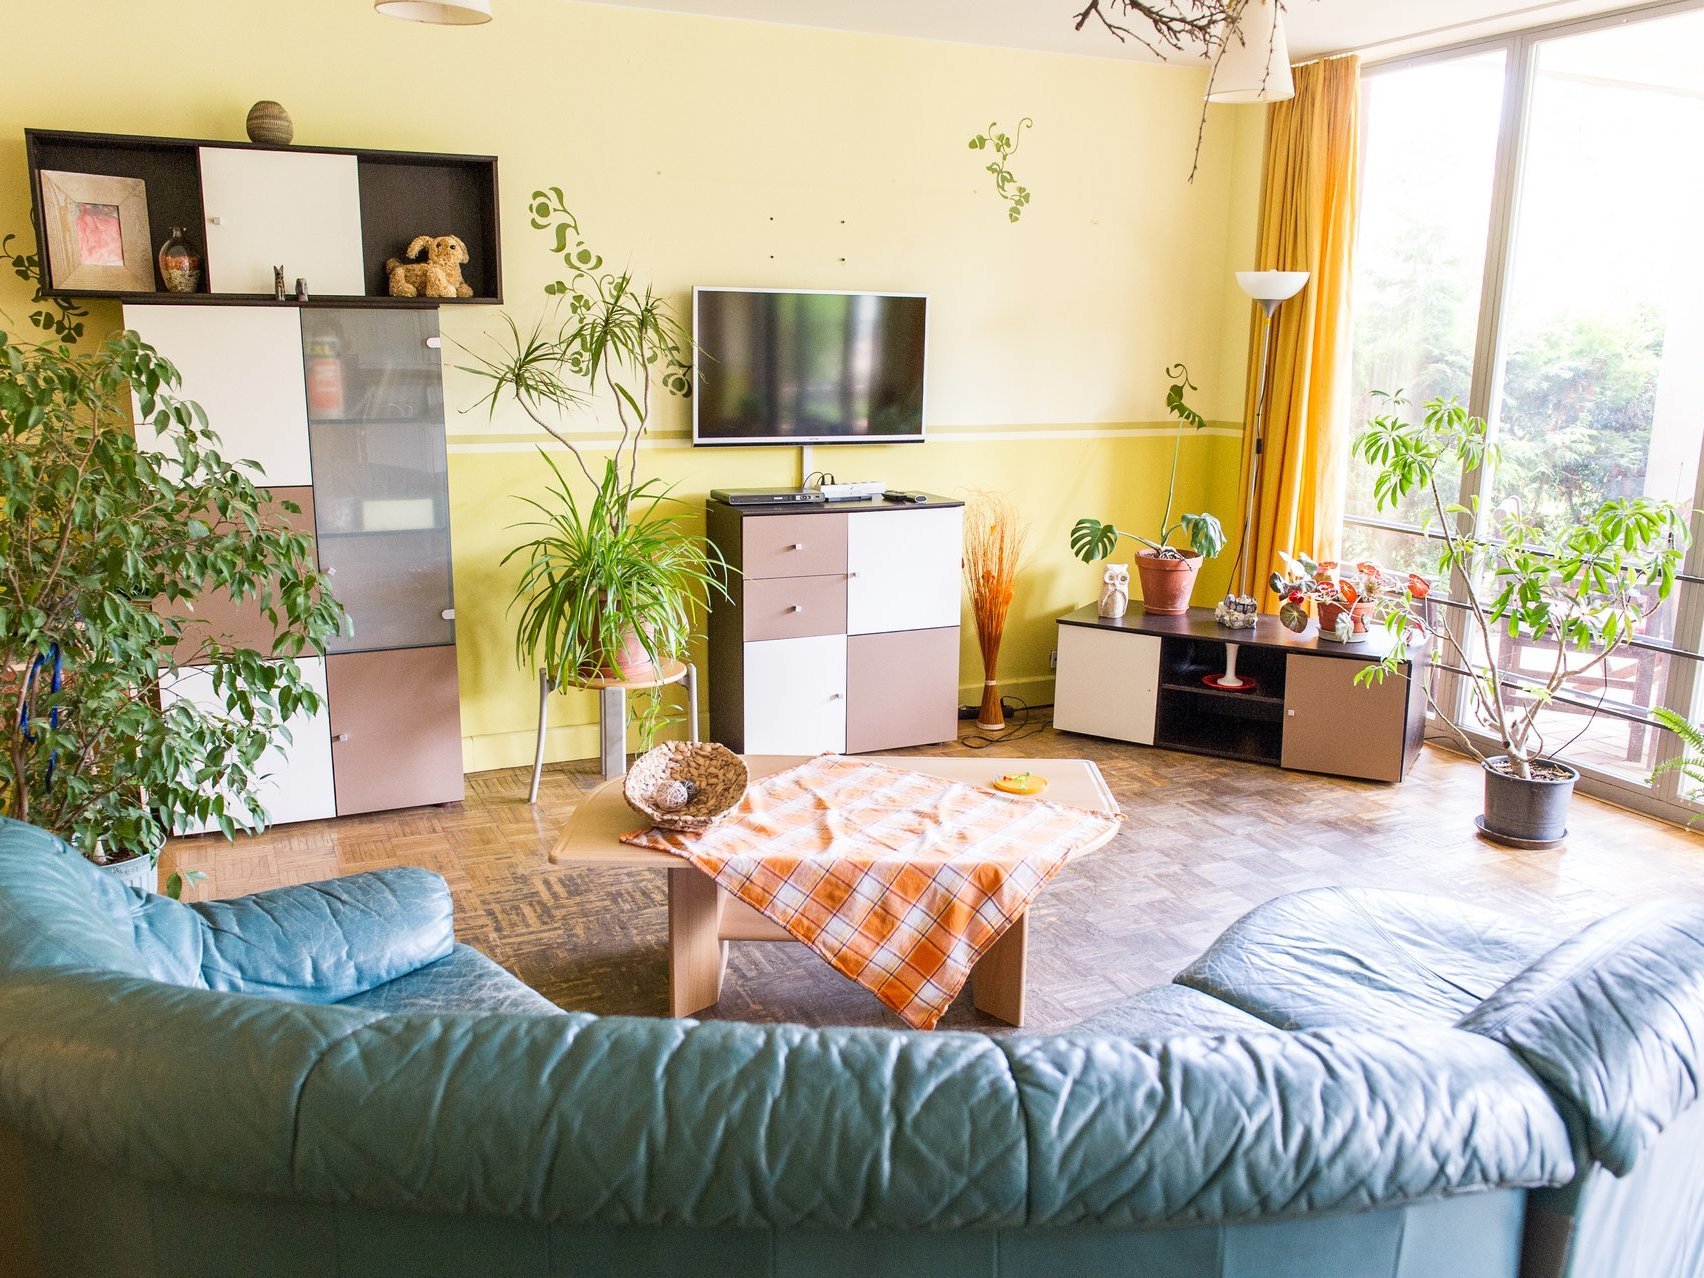 Ein Fernsehzimmer mit gemütlicher Couch, Zimmerpflanzen und großen Fenstern